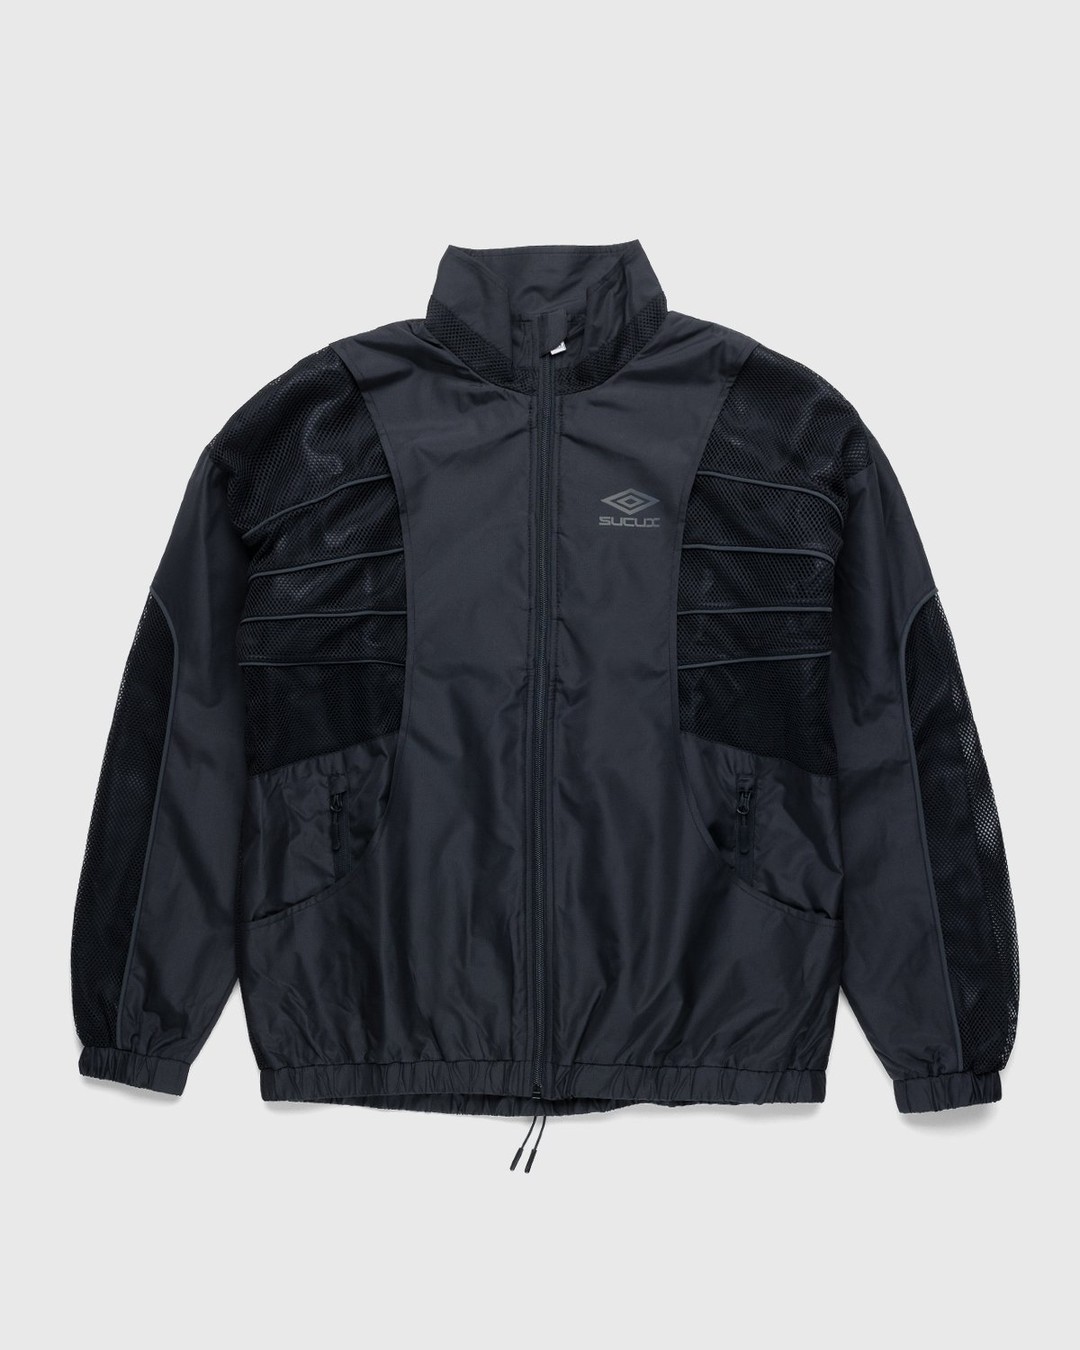 Umbro x Sucux – Zenomorph Jacket Black - Jackets - Black - Image 1